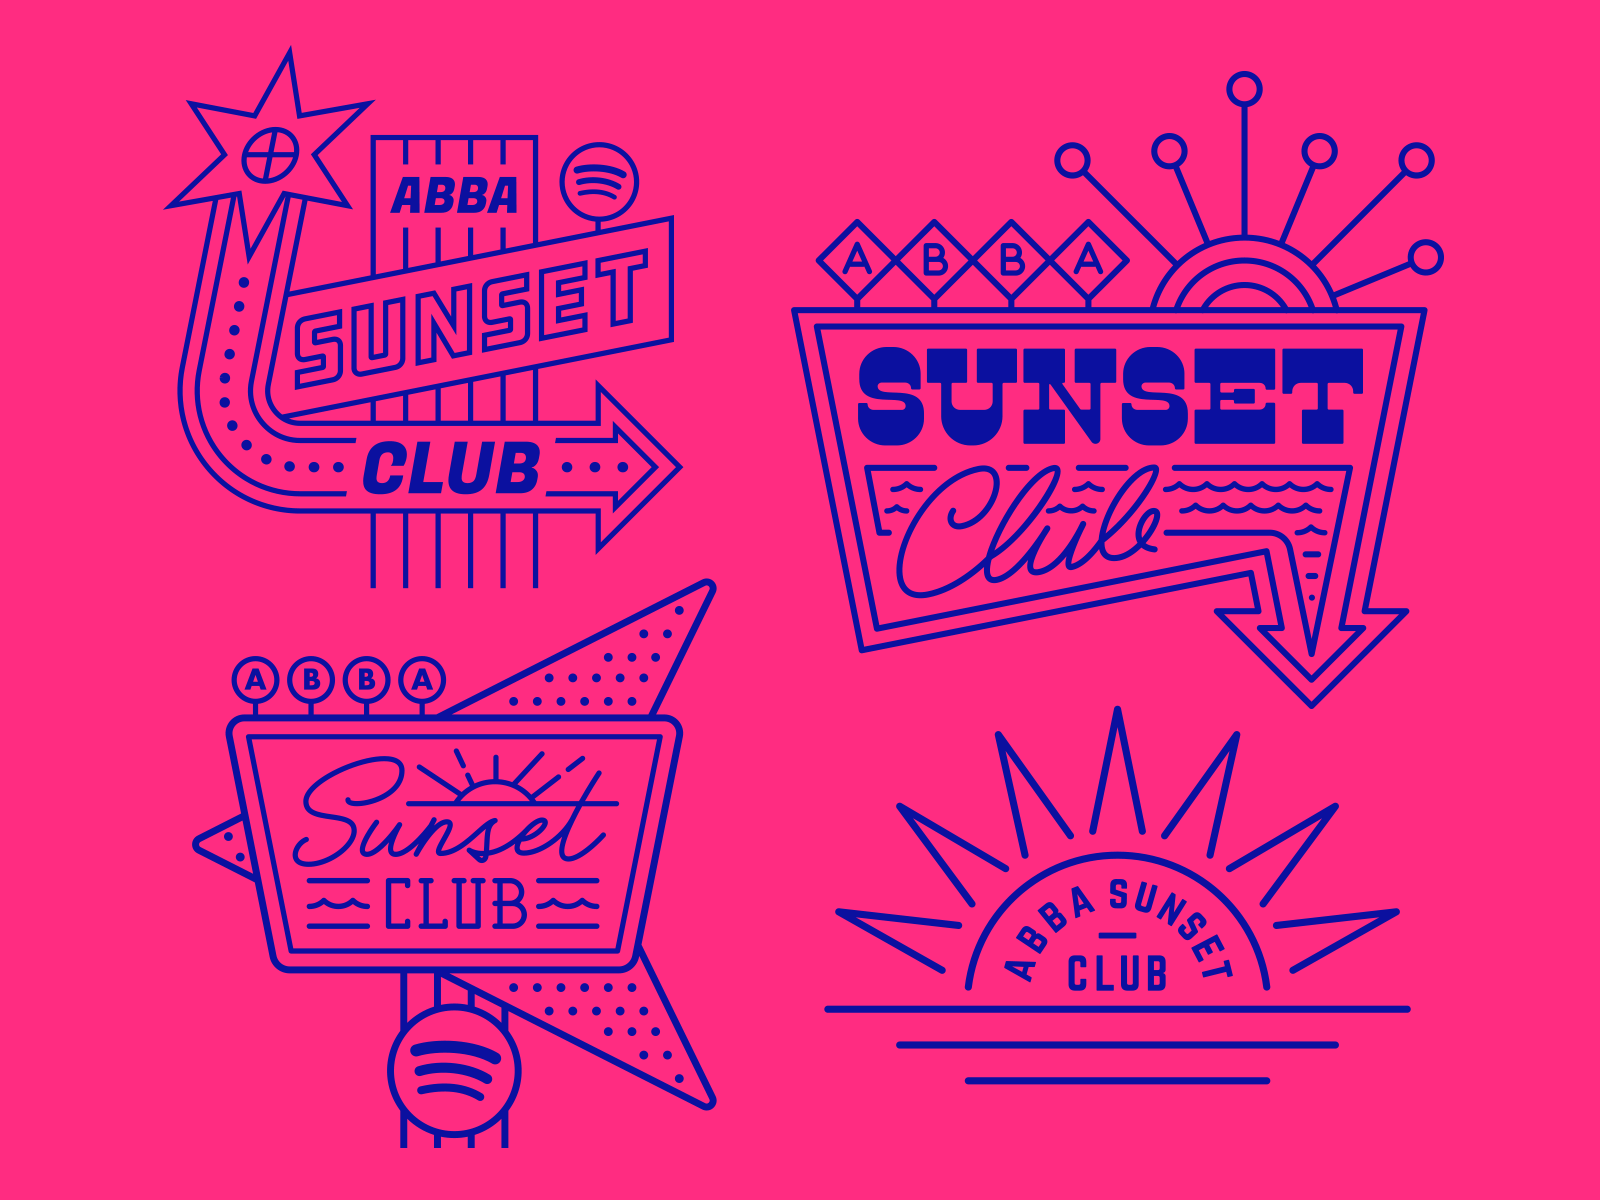 Spotify / ABBA Sunset Club